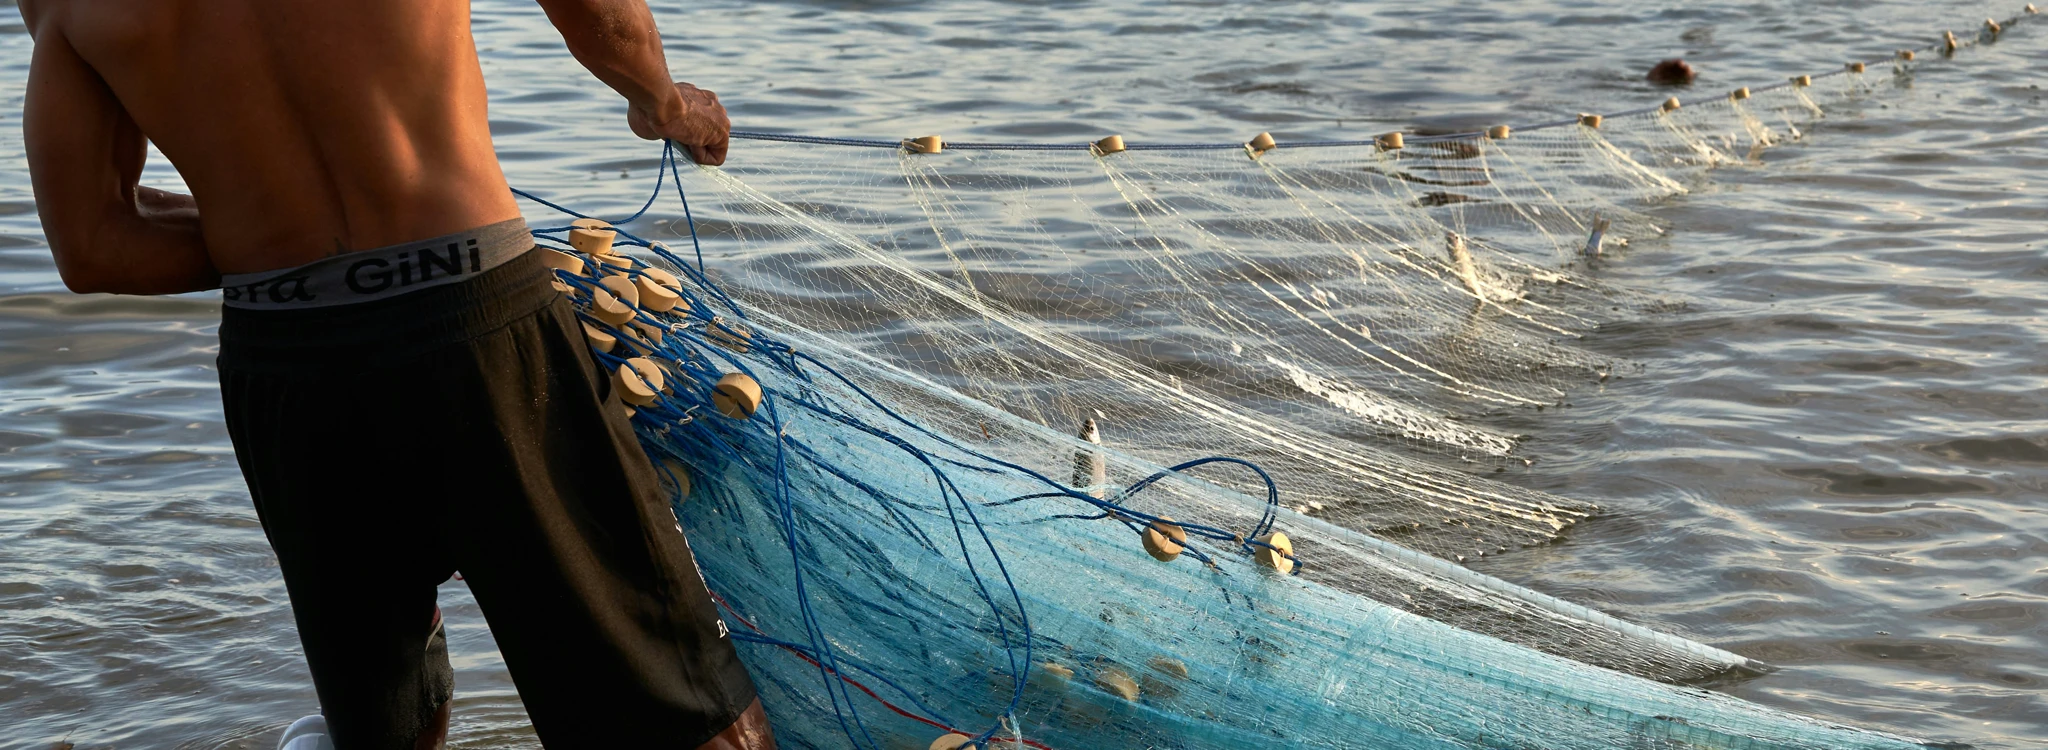 Fisherman hauling in a net